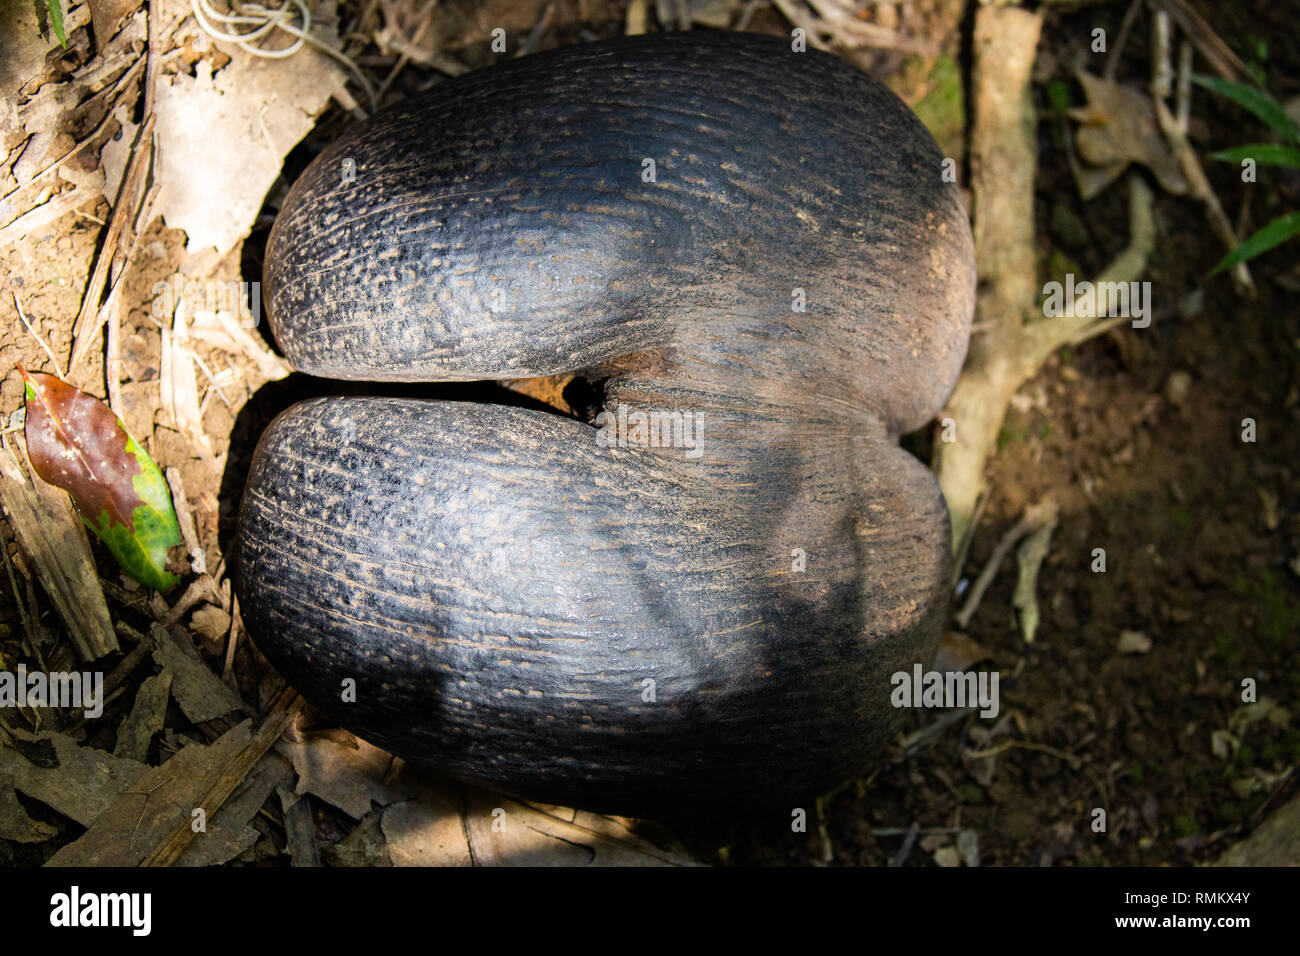 Coco de Mer Samen (Lodoicea maldivica). Dies ist das größte und schwerste Samen der Welt. Es kann bis zu 30 Kilogramm wiegen. In der Seyche fotografiert. Stockfoto